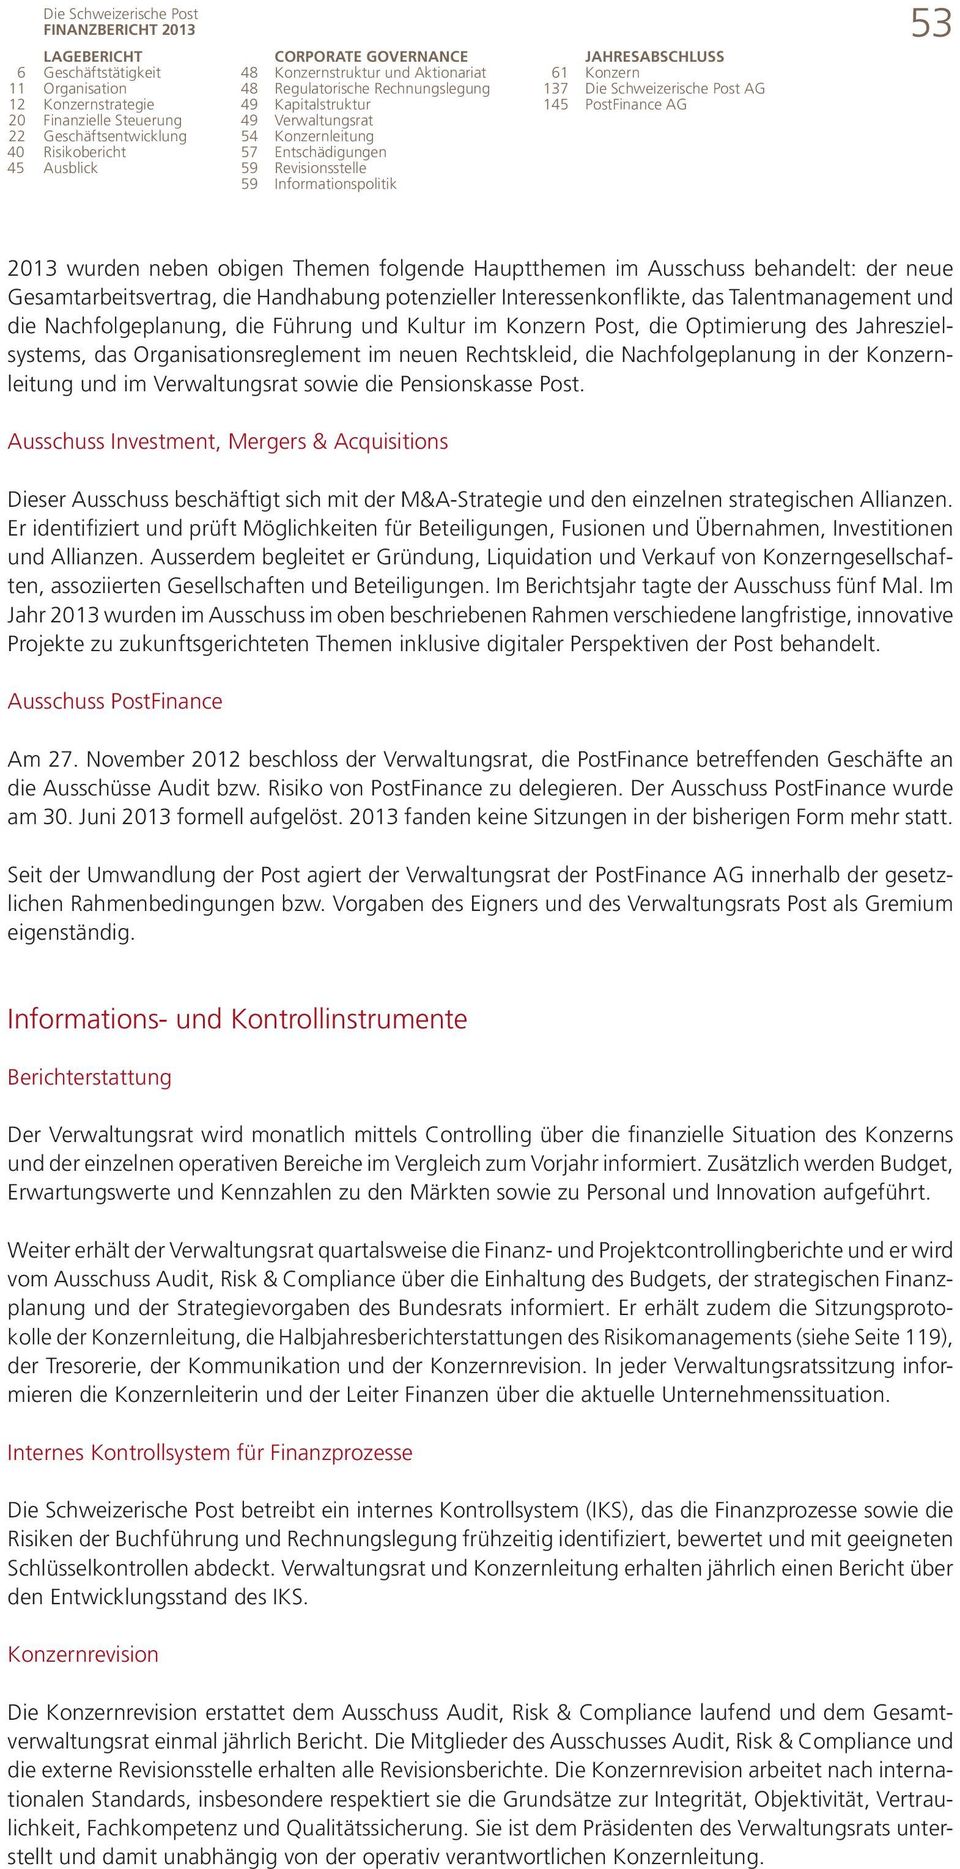 61 Konzern 137 Die Schweizerische Post AG 145 PostFinance AG 53 2013 wurden neben obigen Themen folgende Hauptthemen im Ausschuss behandelt: der neue Gesamtarbeitsvertrag, die Handhabung potenzieller